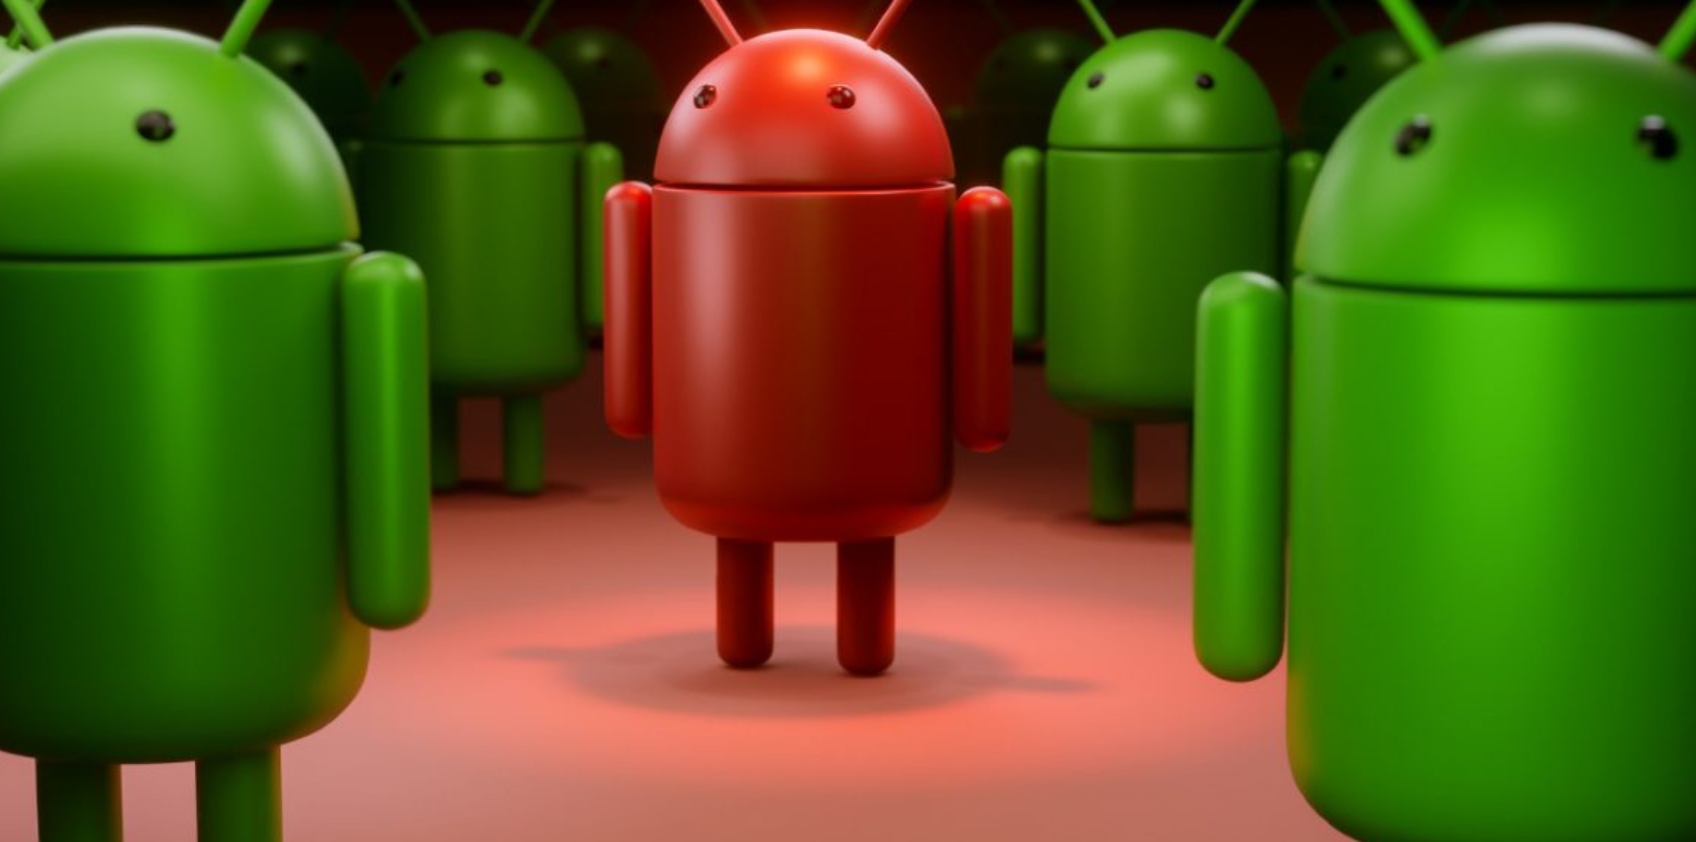 Android cihazların antivirüs programına ihtiyaç var mı